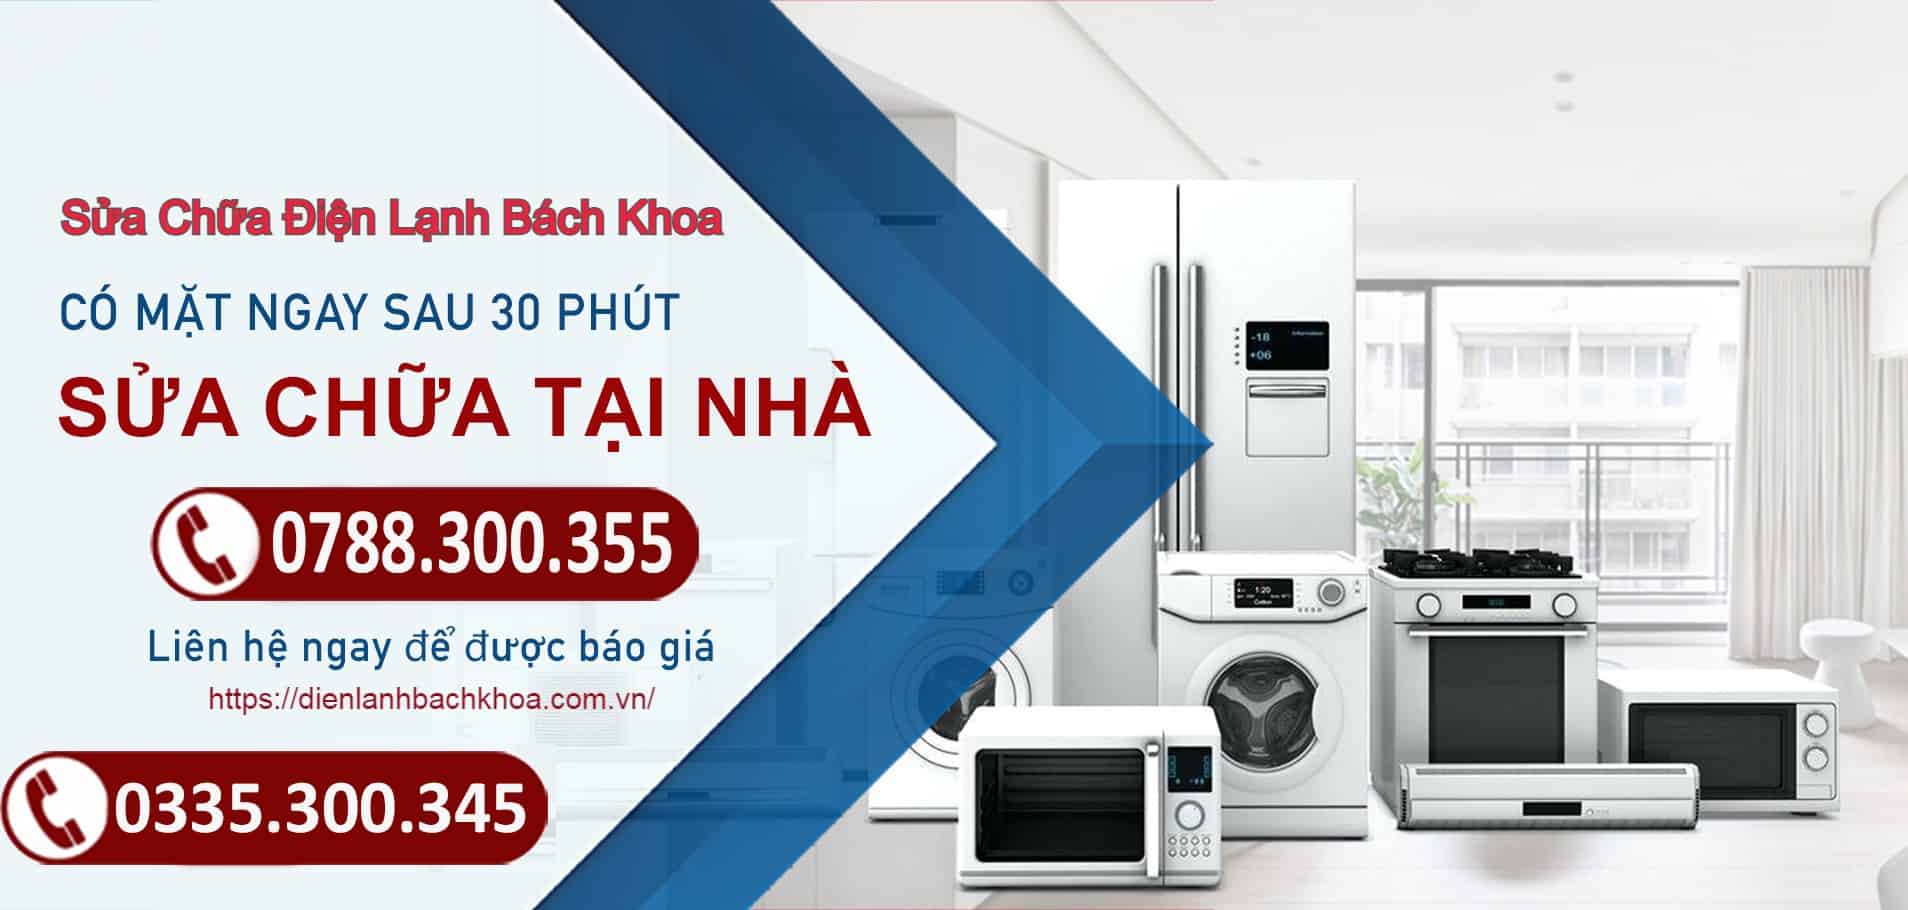 Điện lạnh Bách Khoa - Dịch vụ sửa chữa tủ lạnh giá rẻ tại Hà Nội